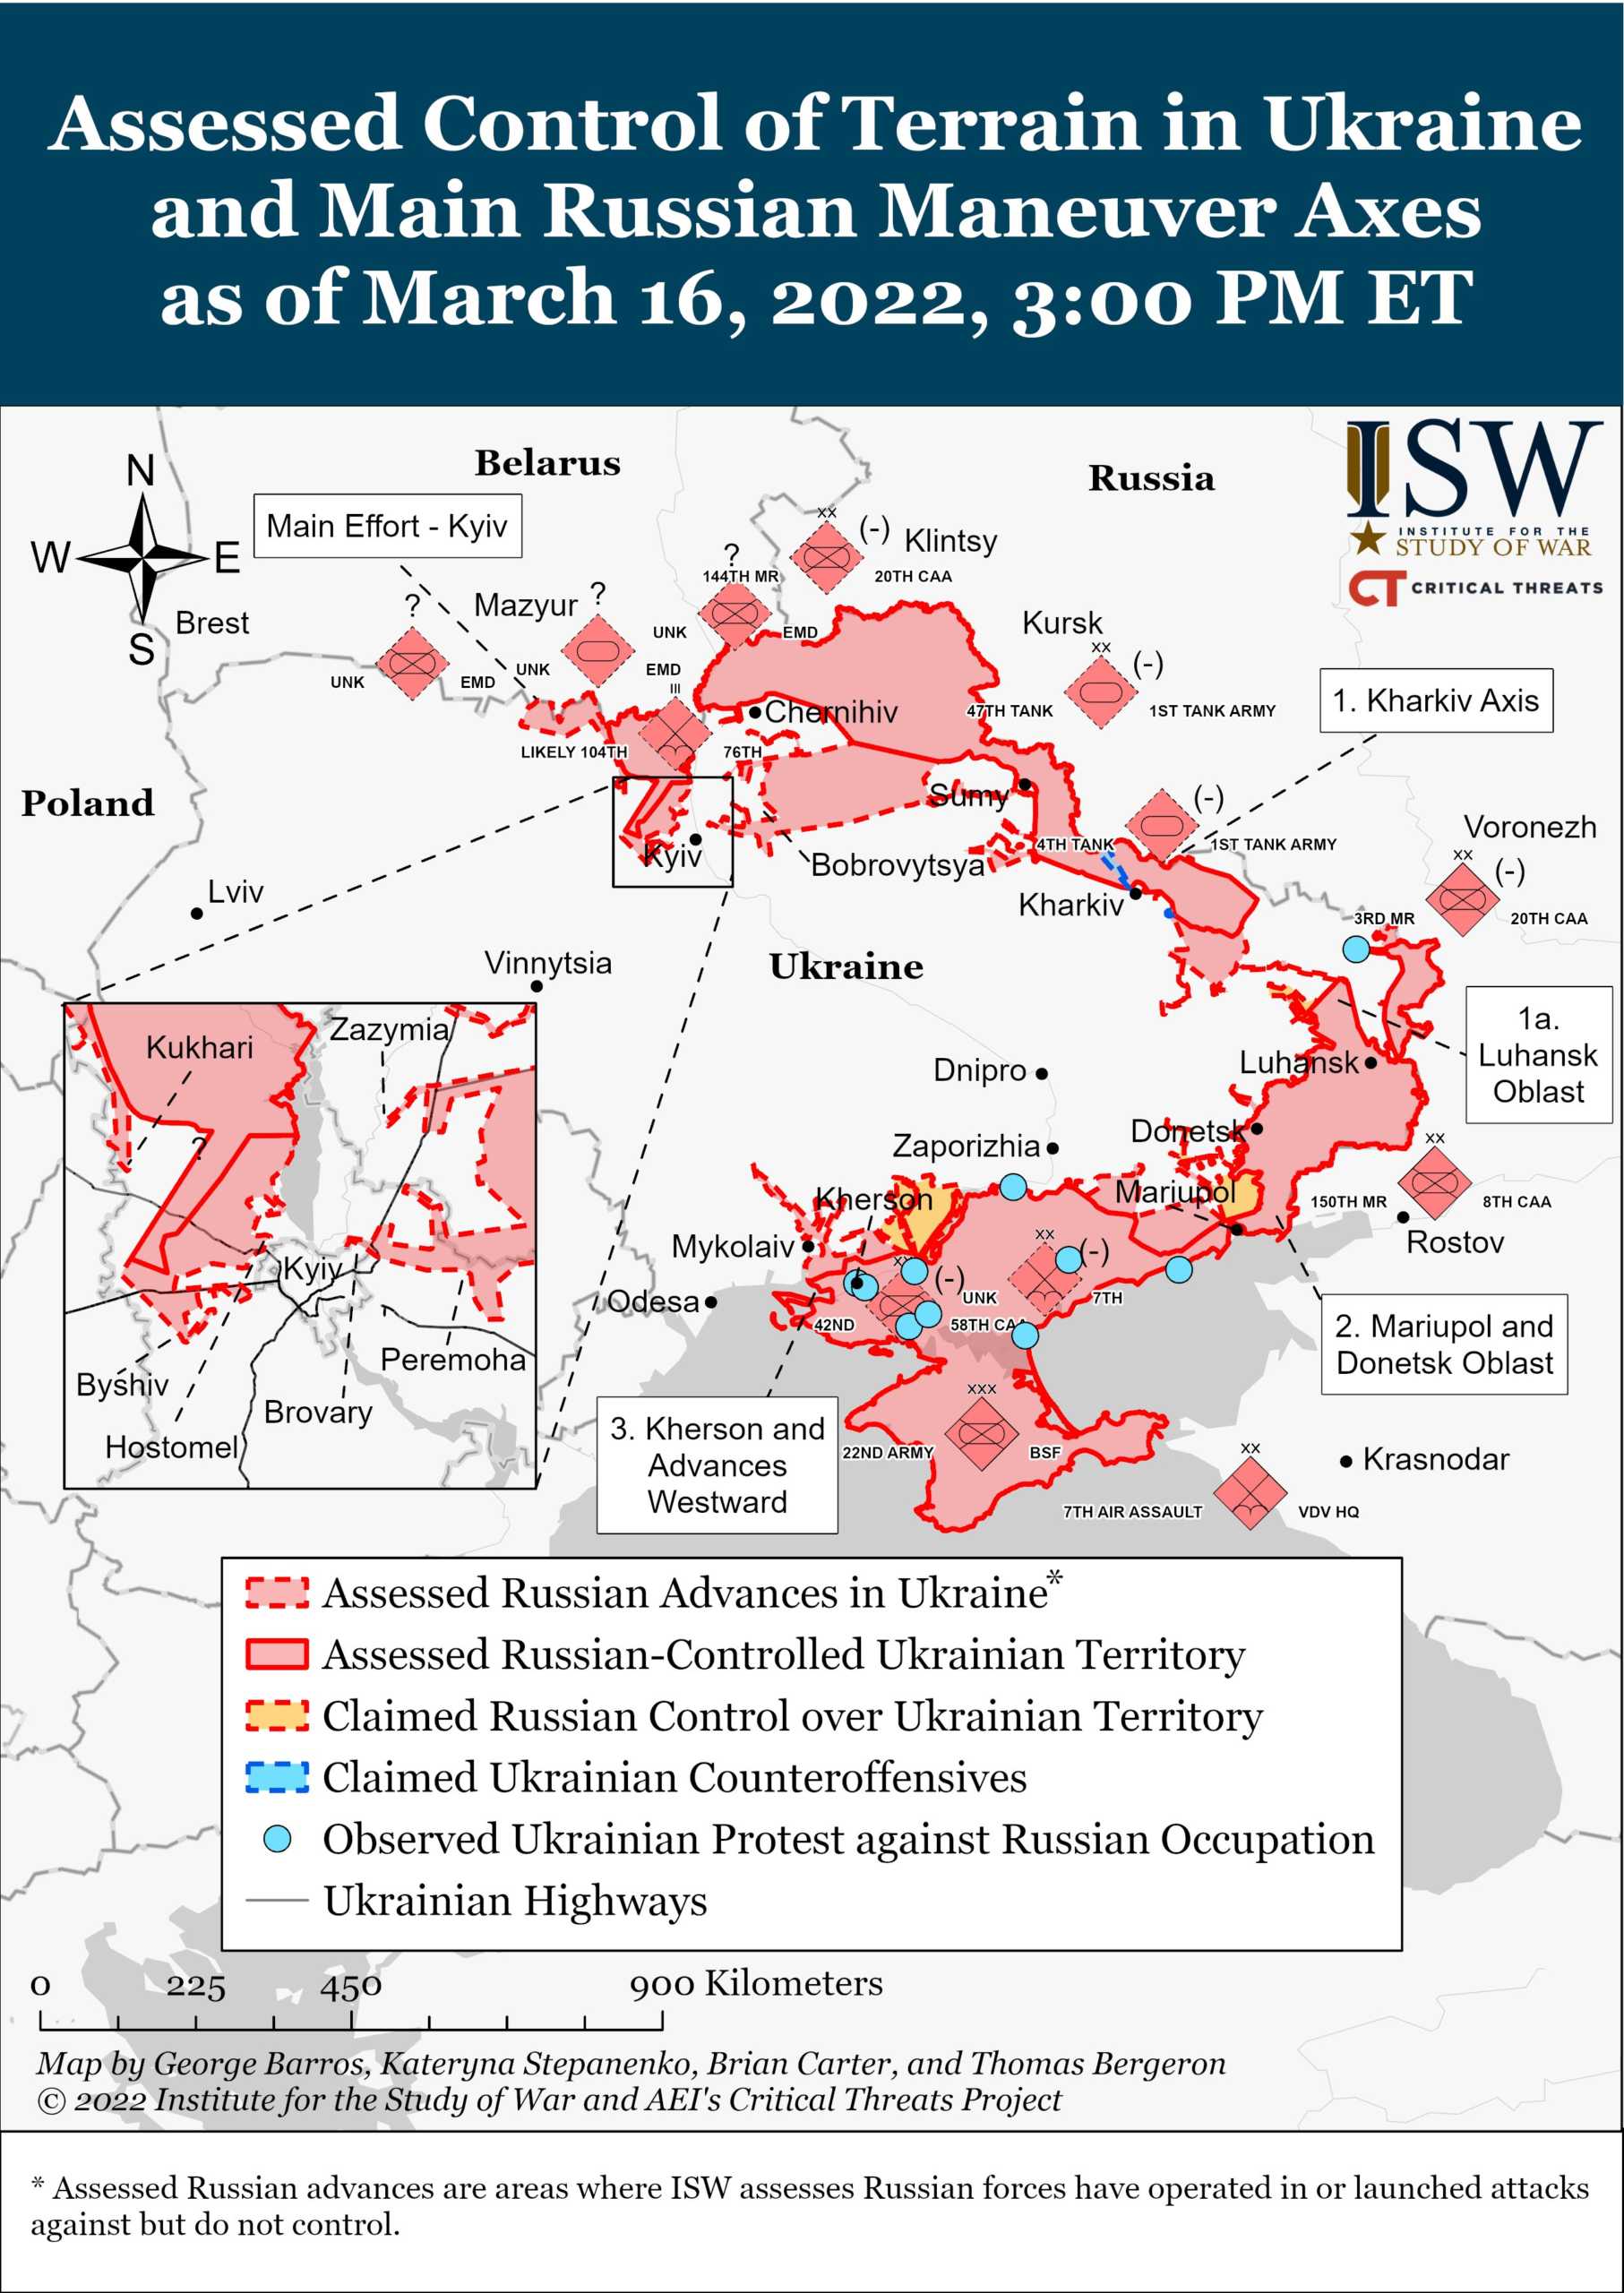 Toate Teritoriile Ocupate de Rusia in Ucraina pana in 17 Martie 2022 harta